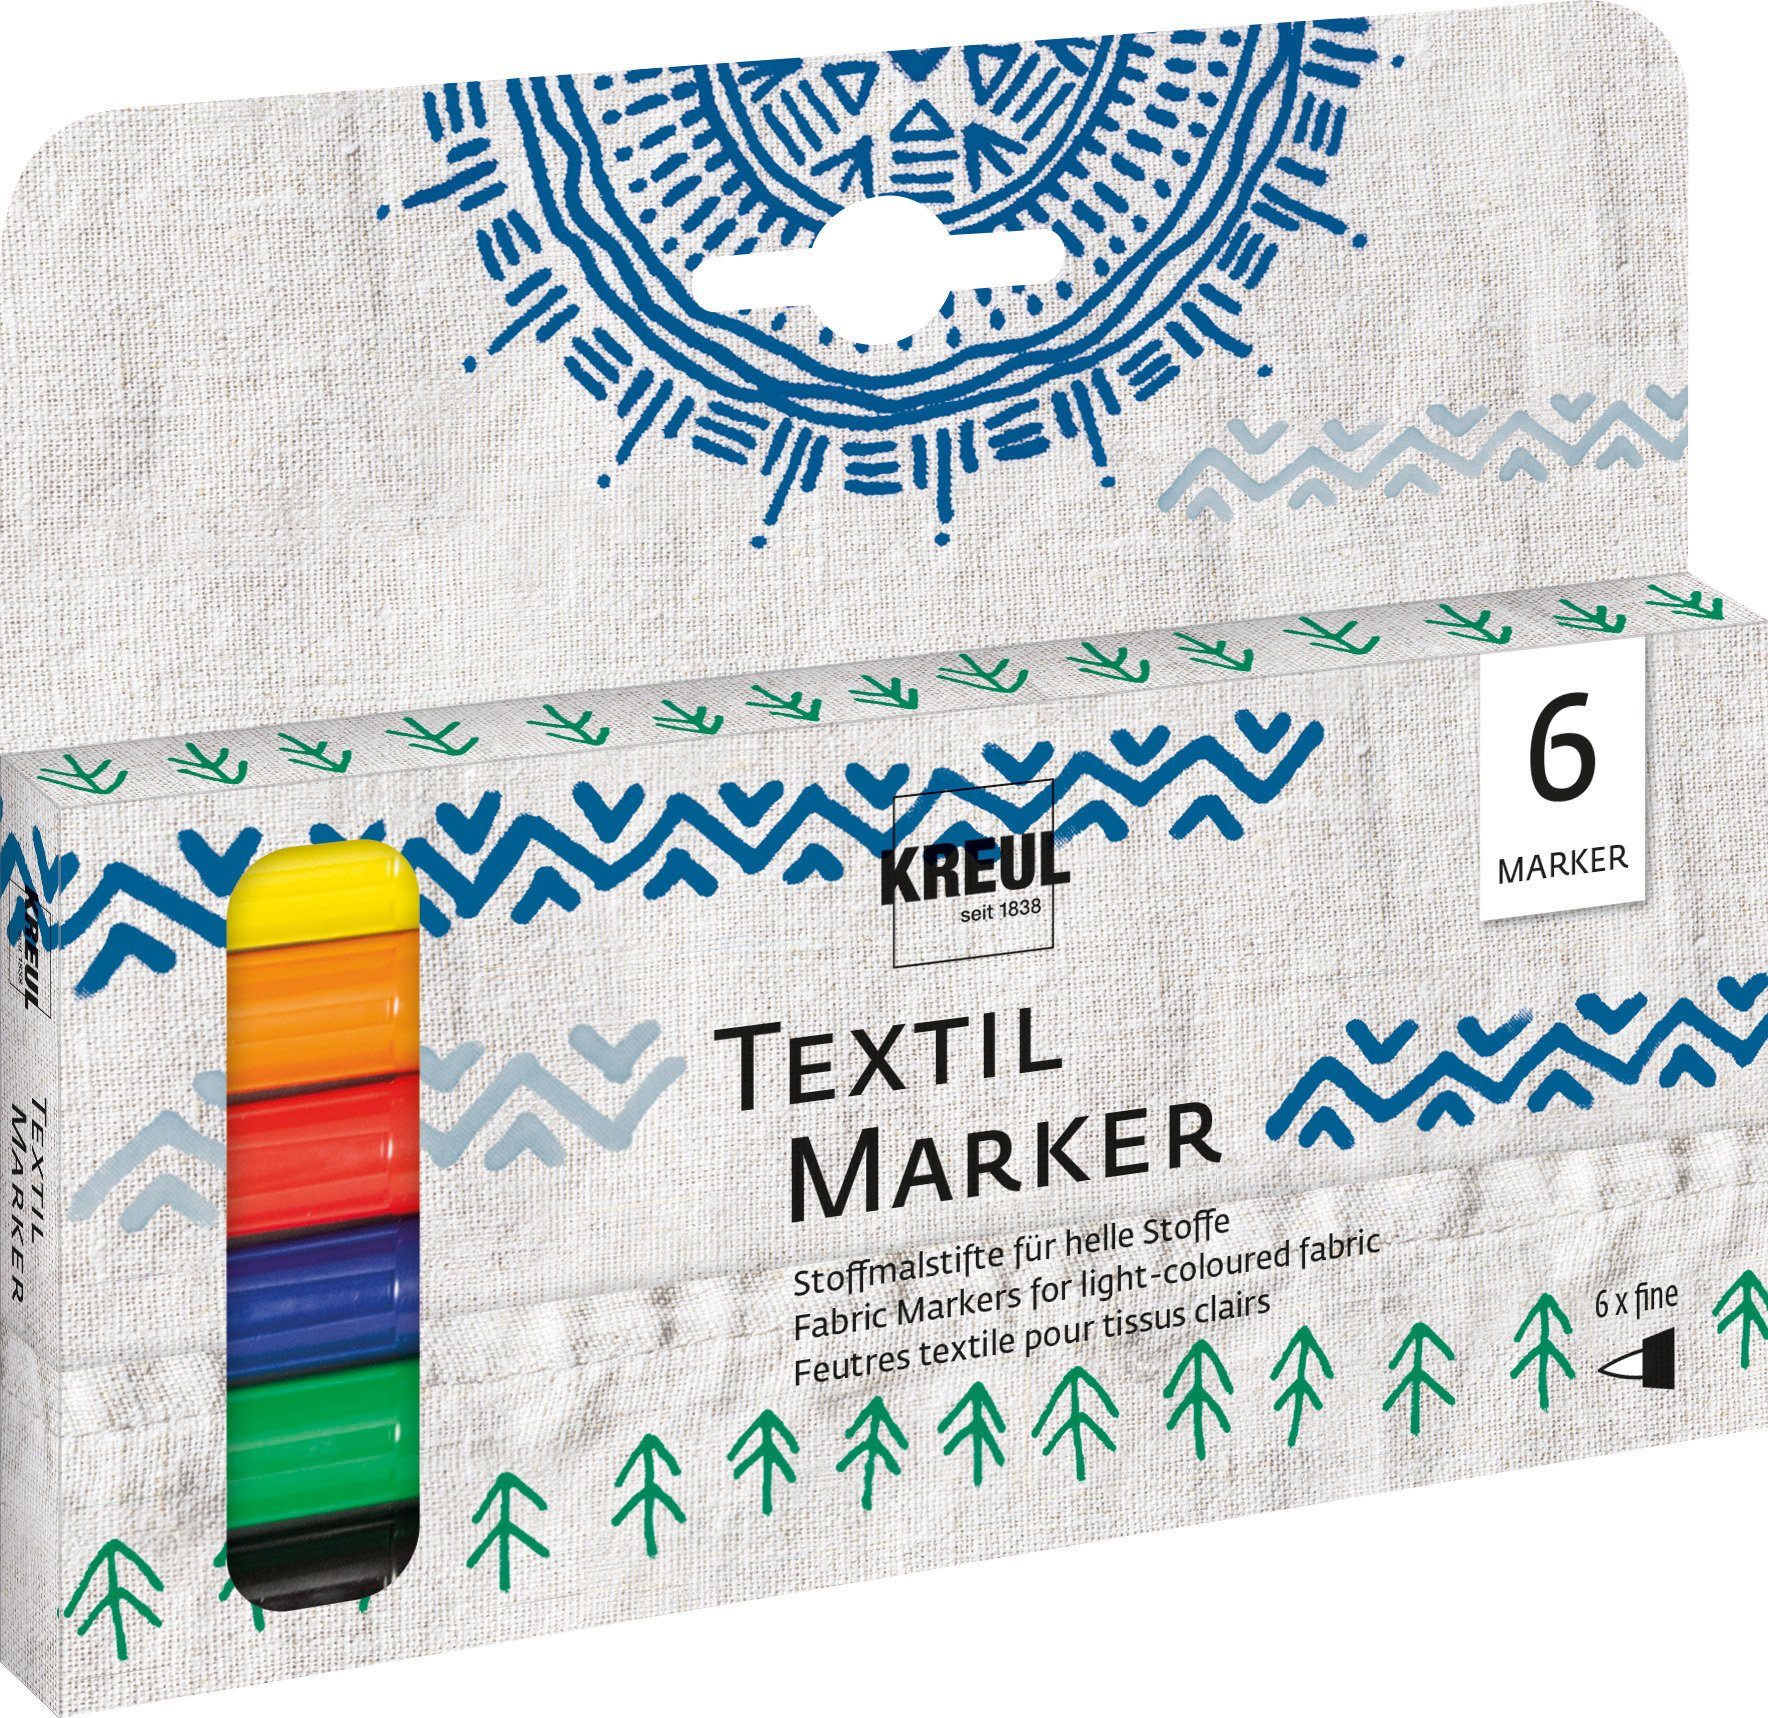 Kreul Textilmarker Textil Marker fine, 6er-Set